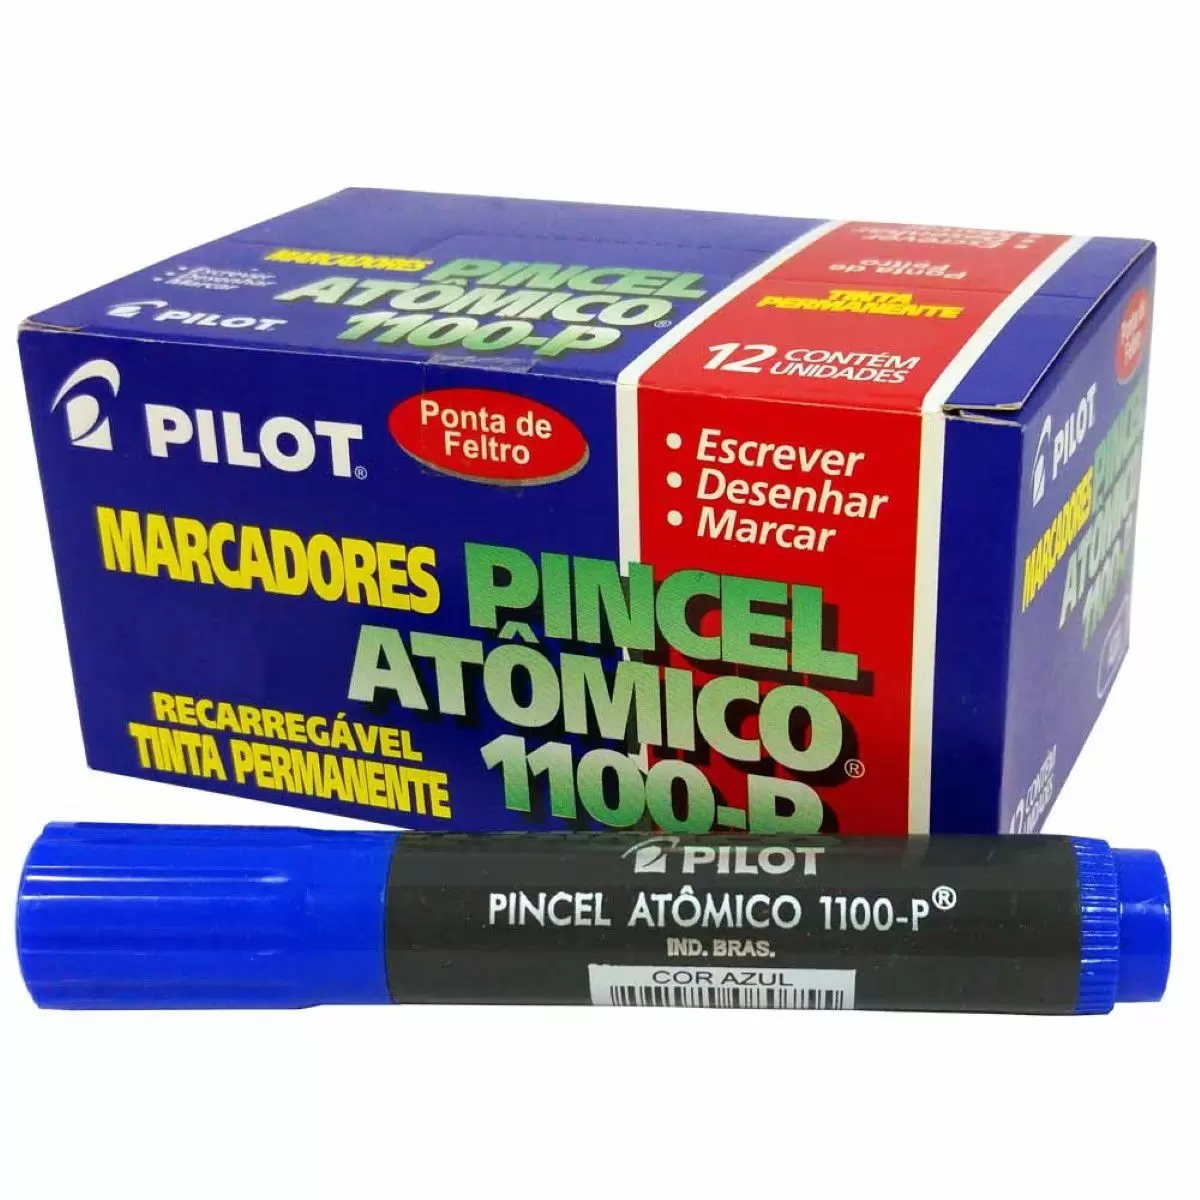 Pincel Atômico 1100-p Recarregável Azul / Preto / Vermelho Caixa 12 Unidades – Pilot